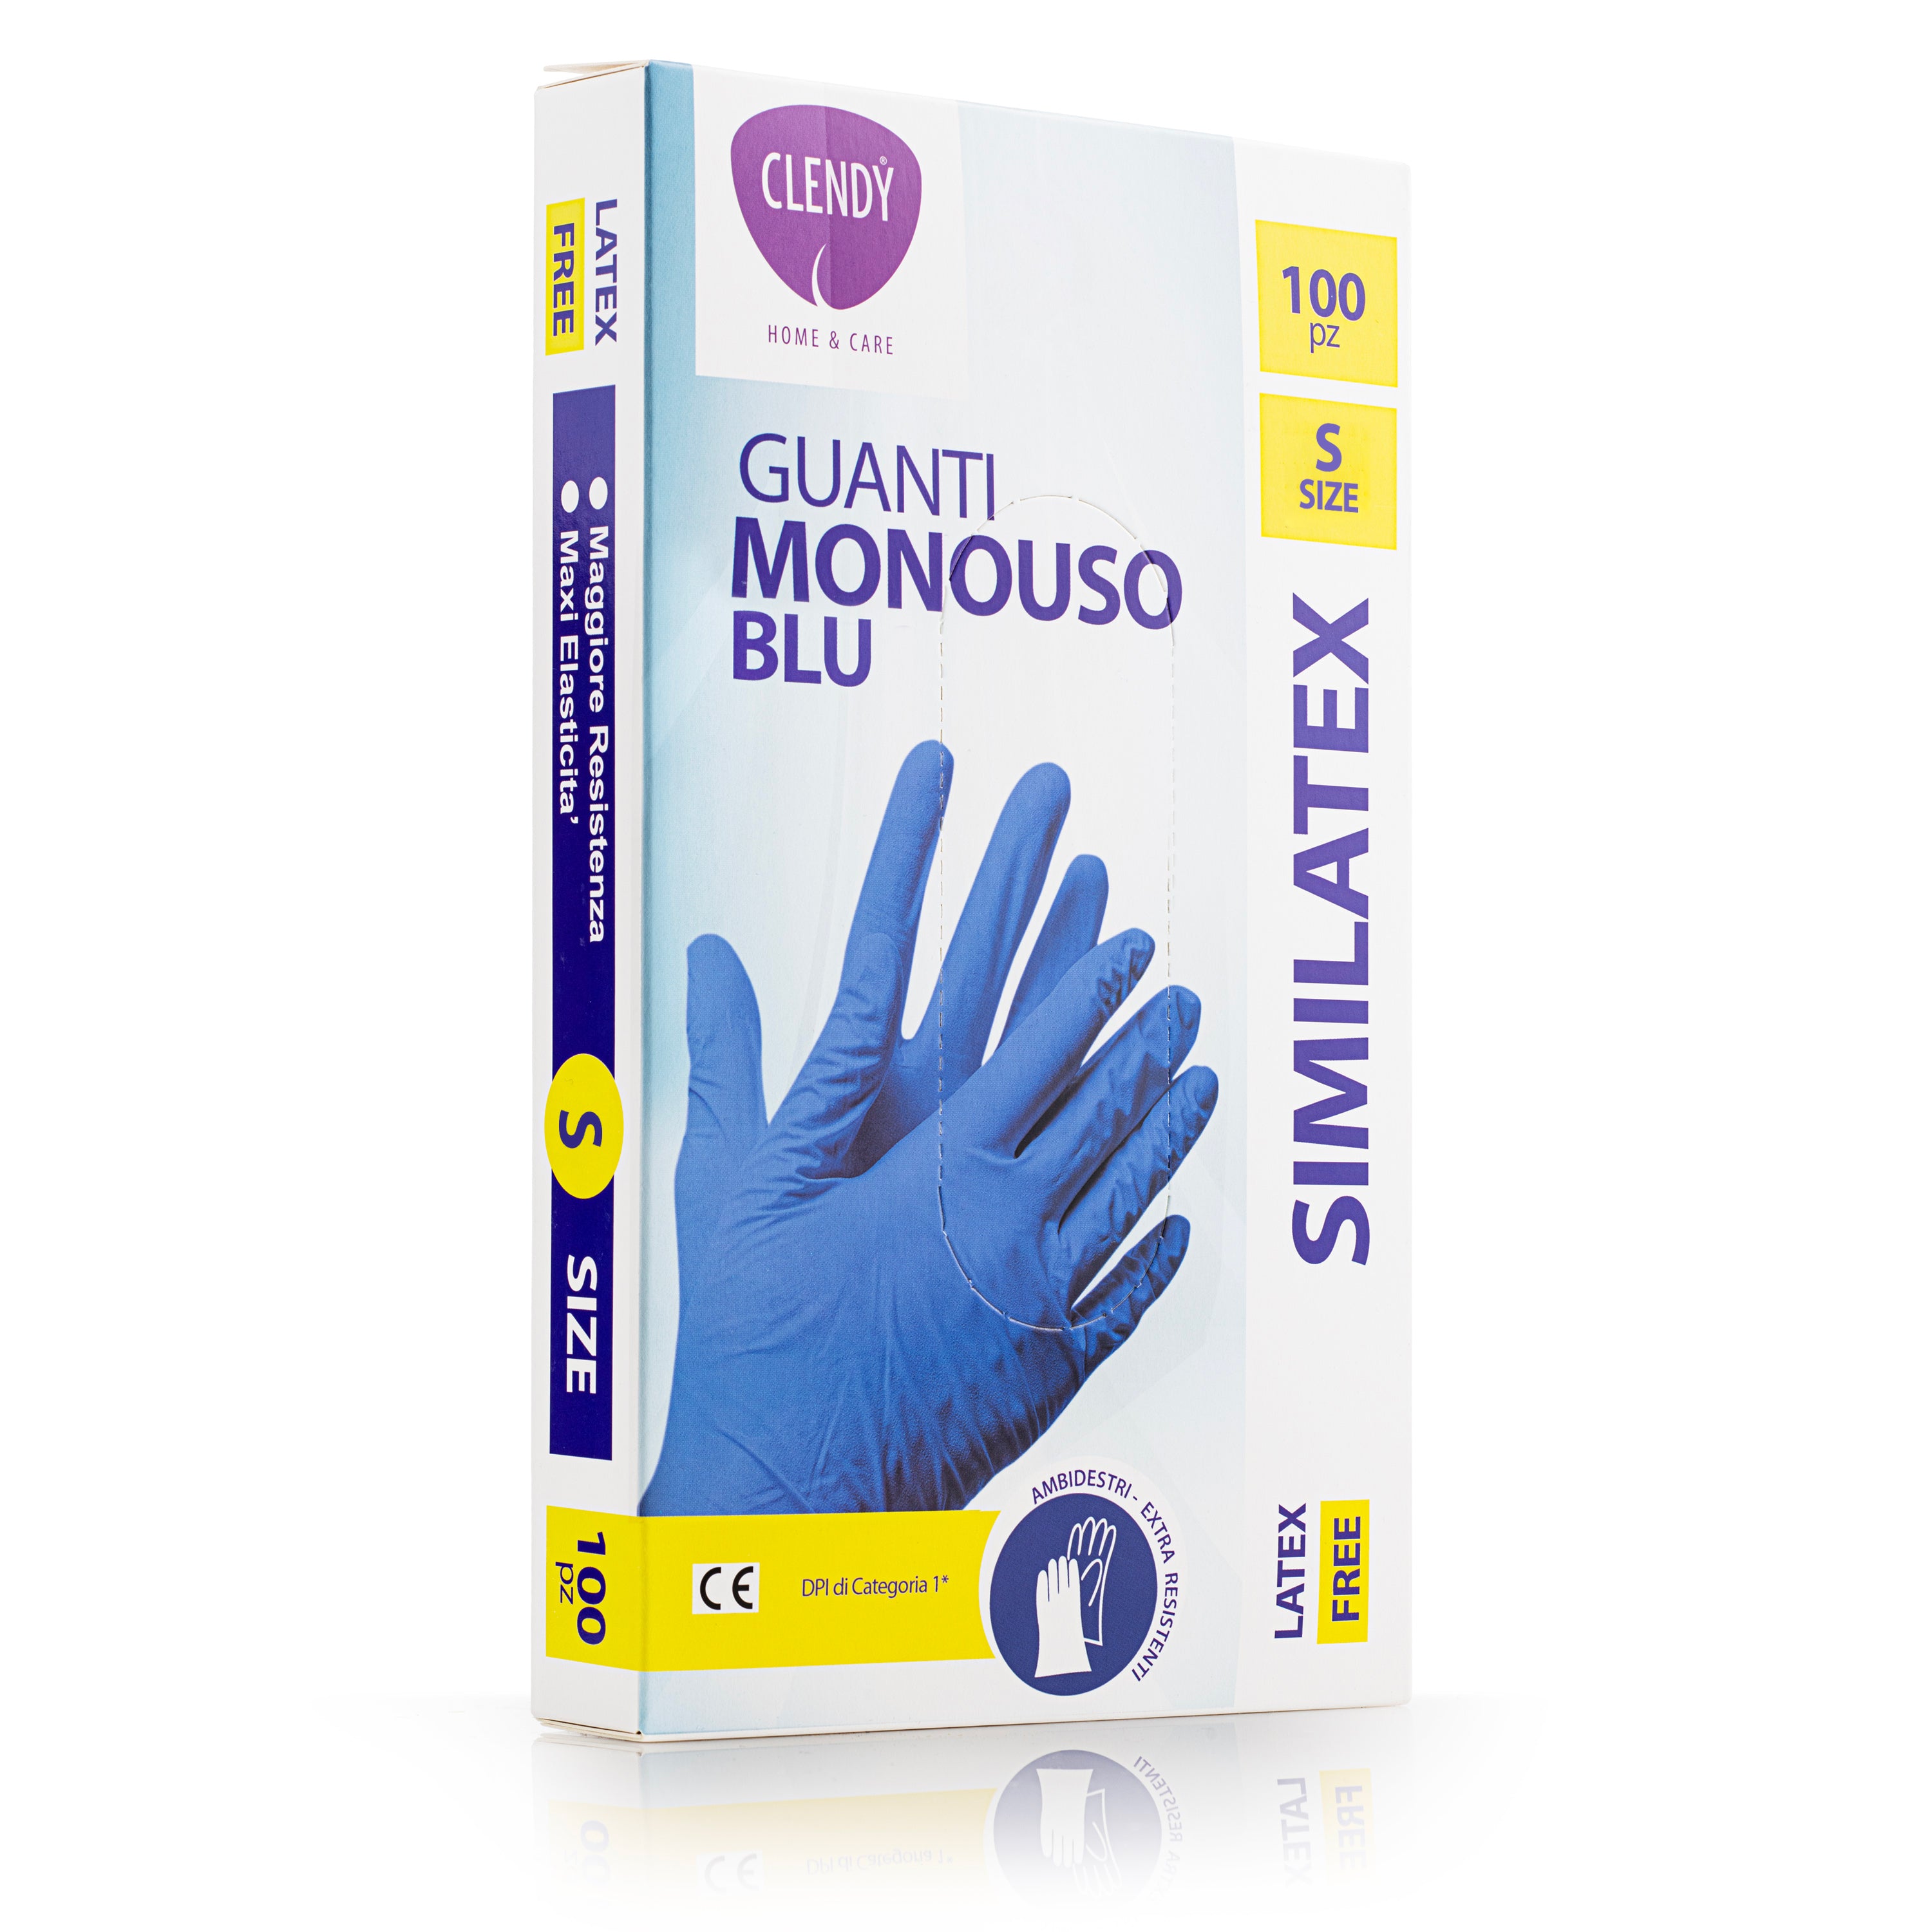 Guanti Monouso Similatex Blu - 100pz – Clendy - Per chi ama i piccoli gesti